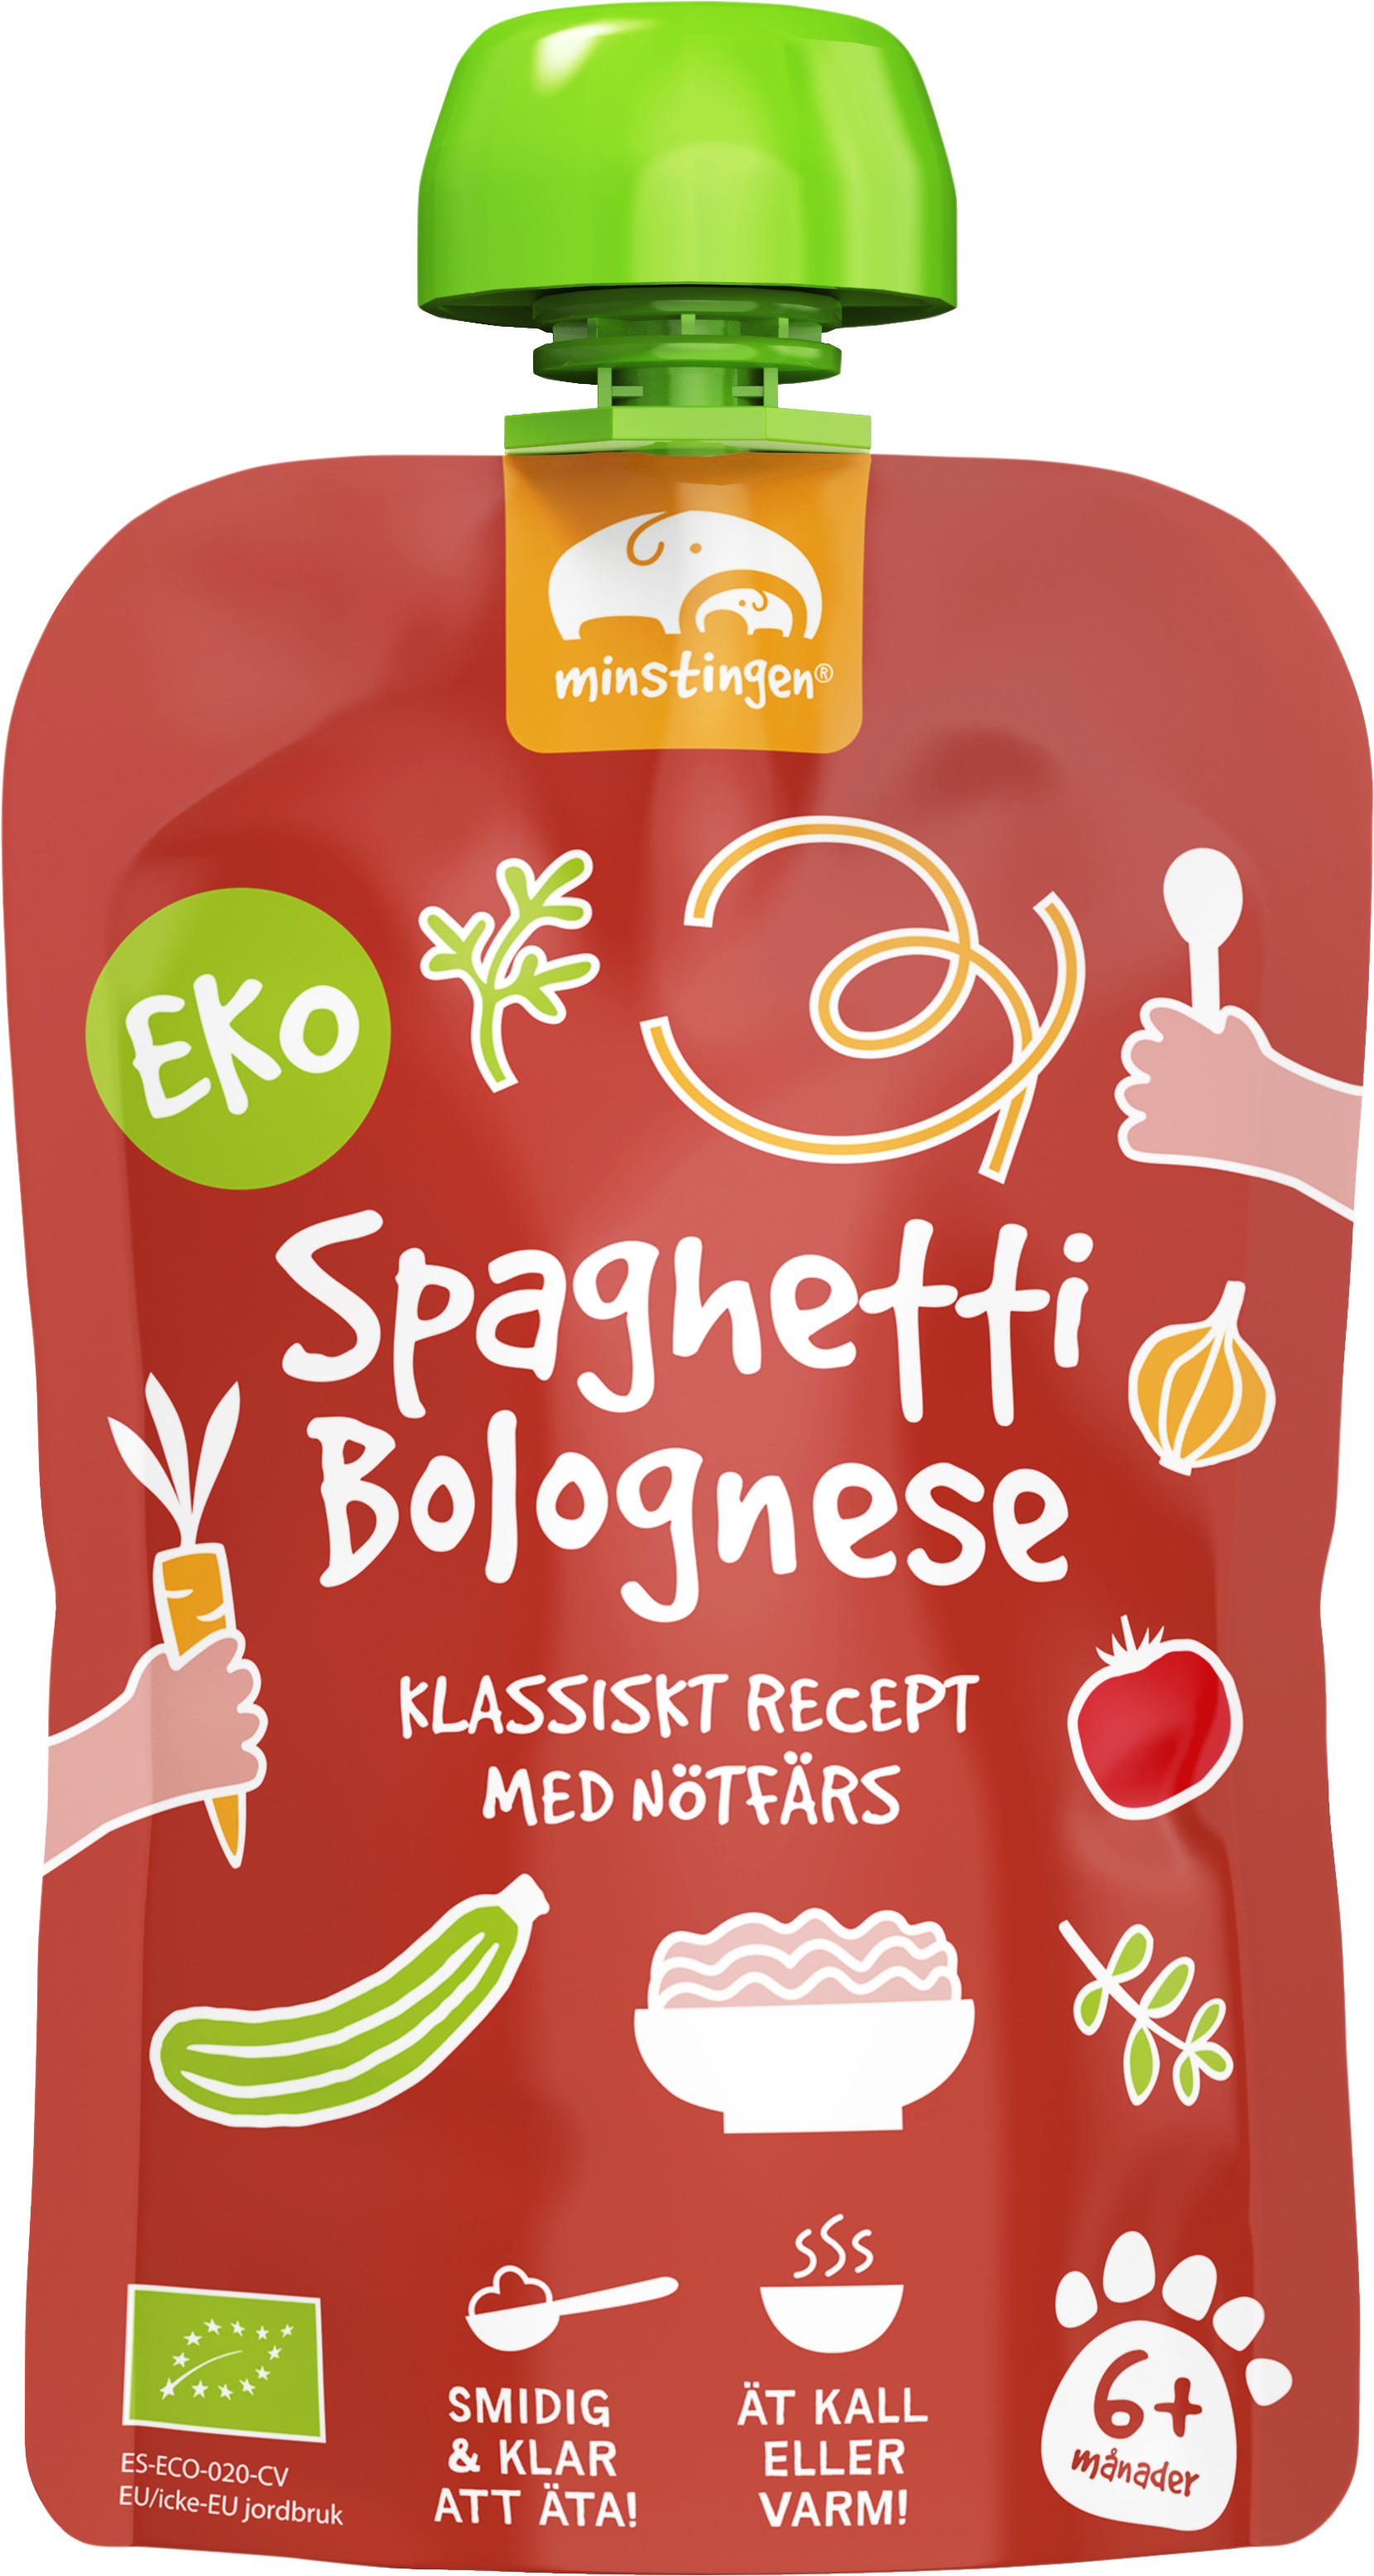 Ekologisk barnmat spaghetti bolognese i klämpåse